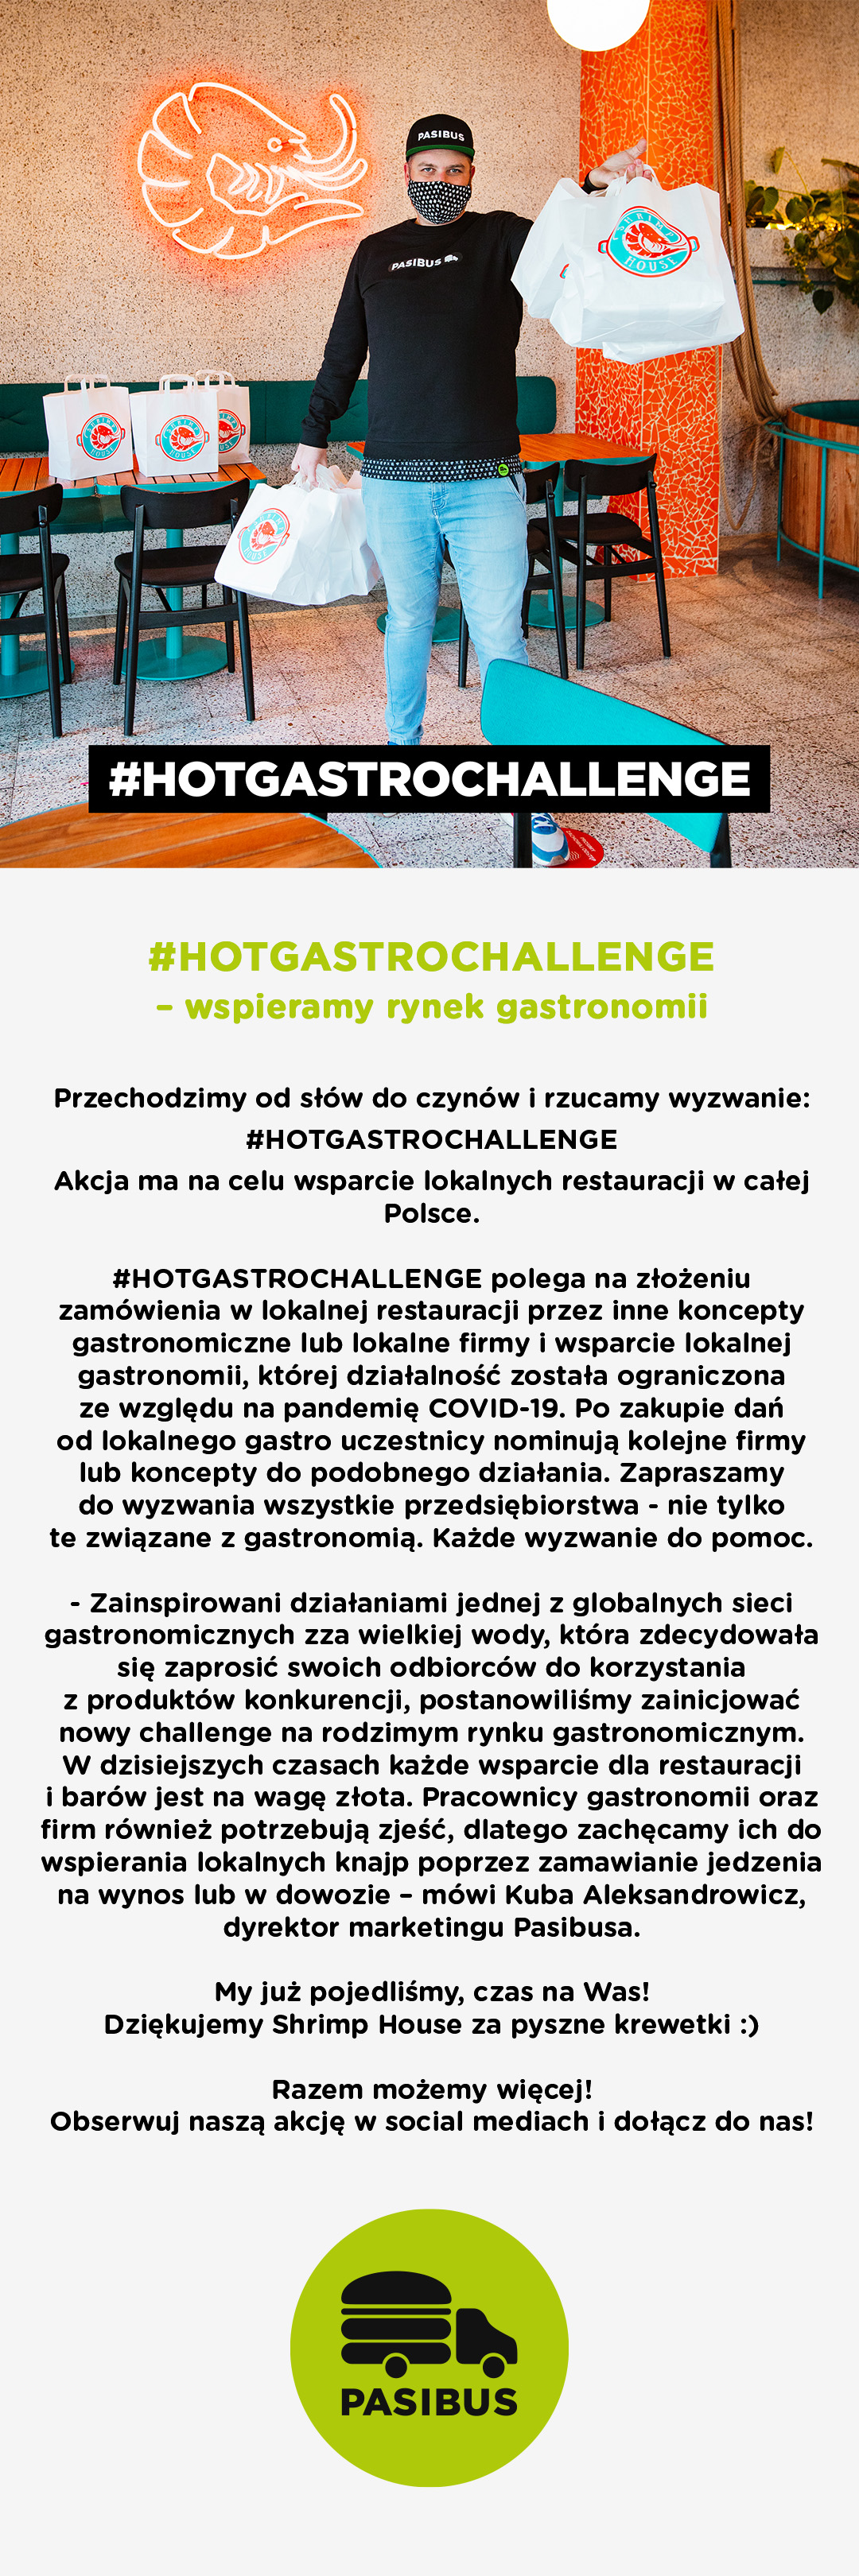 HOTGASTROCHALLENGE - Wspieramy Gastro